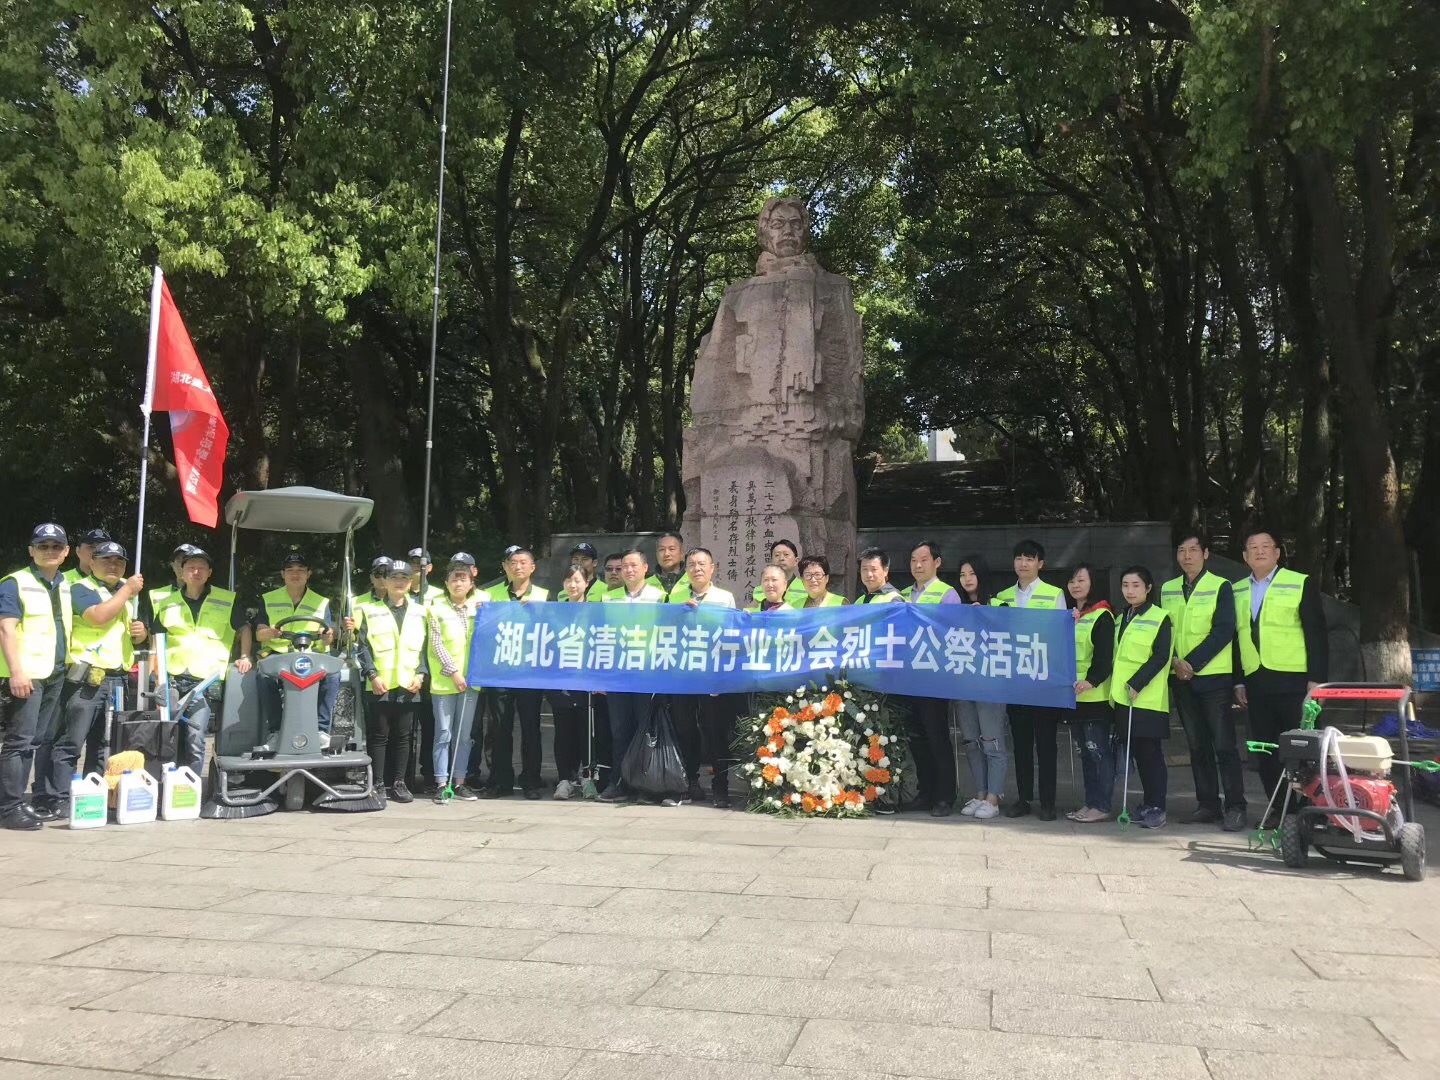 湖北省清洗保洁行业协会烈士公祭活动合影